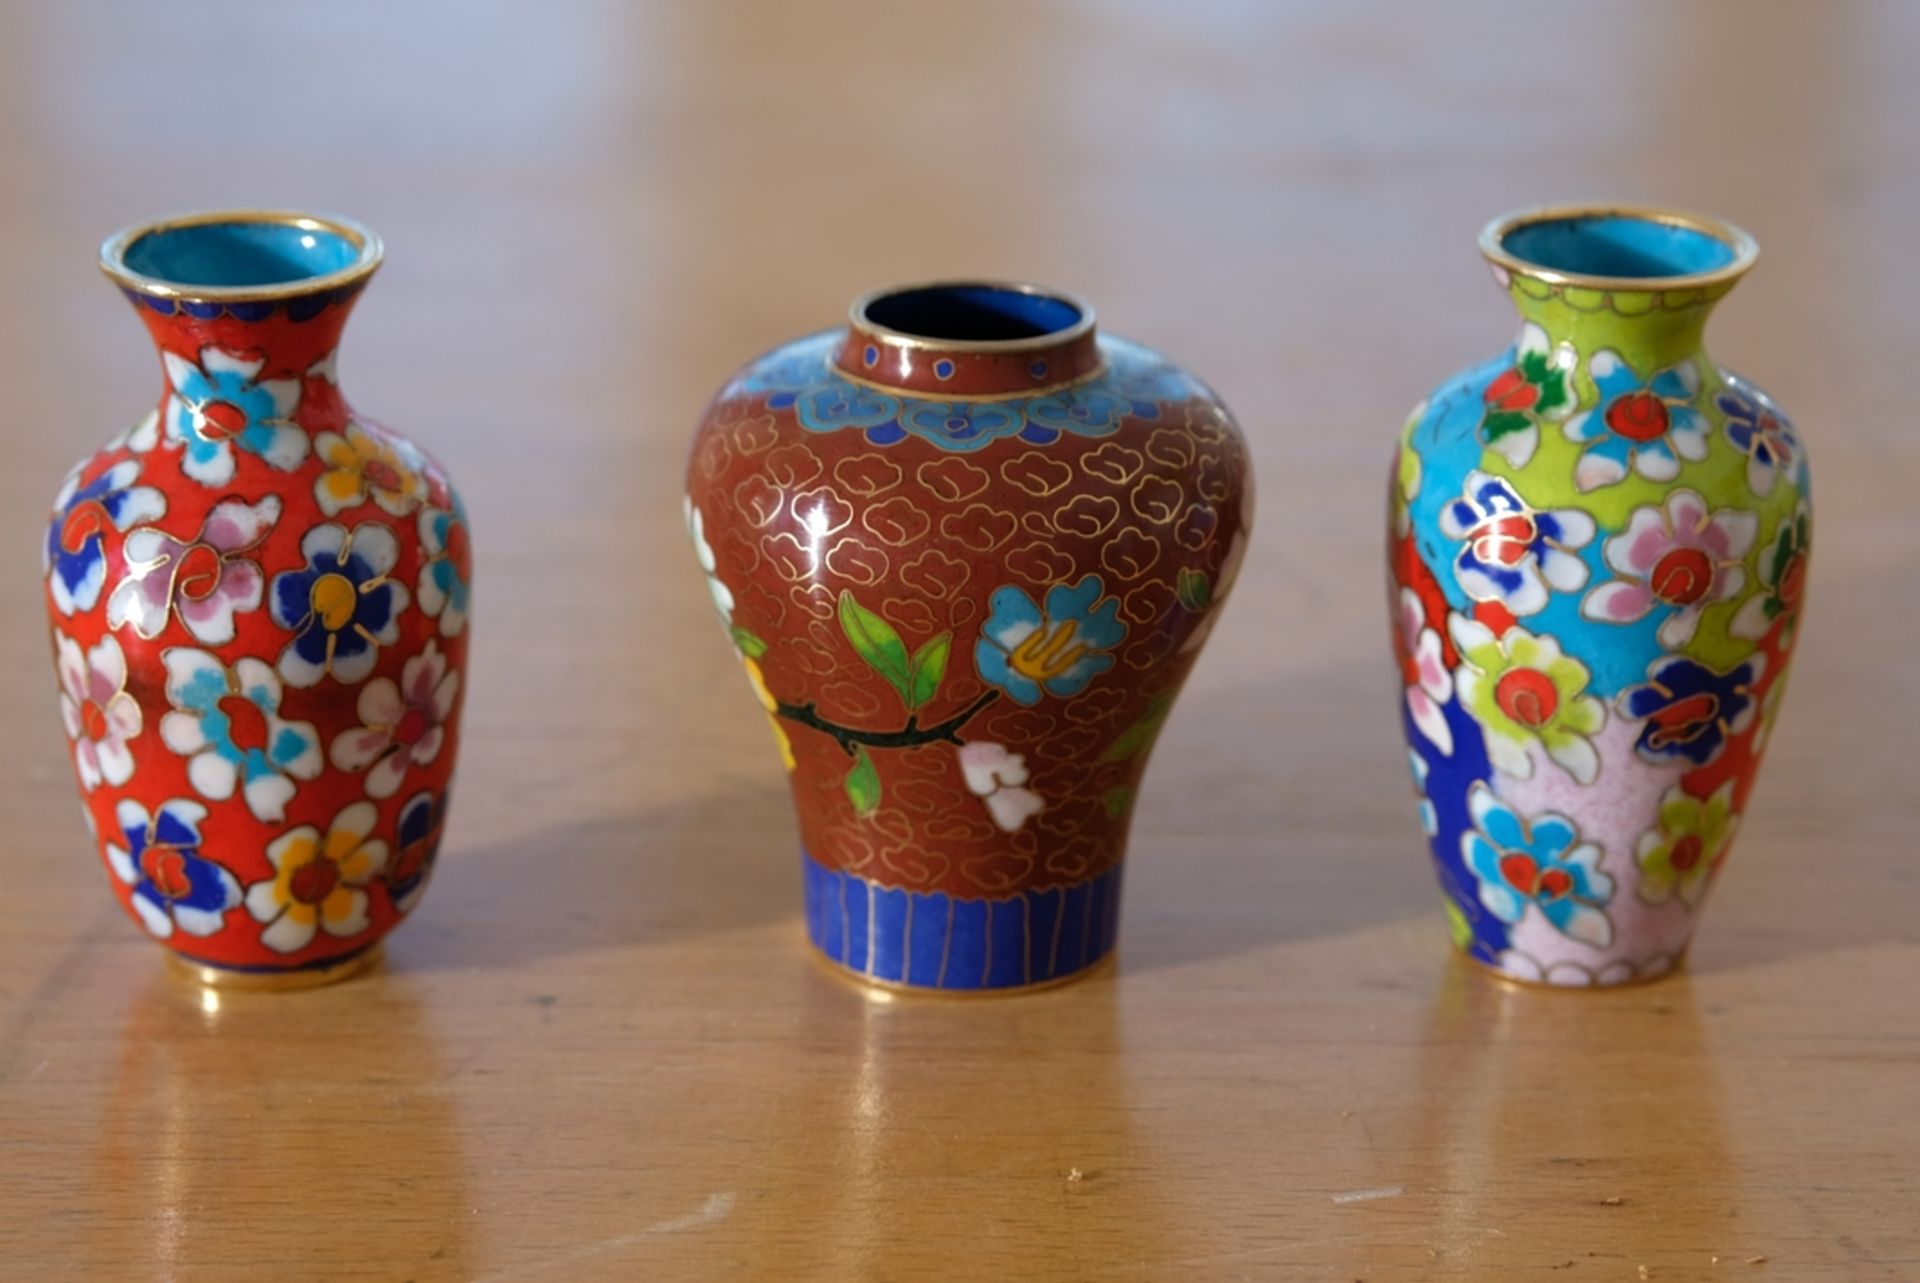 Japanische Cloisonné-Vasen, drei Miniaturvasen aus Emaille, unterschiedliche Farbgebung. - Bild 2 aus 2